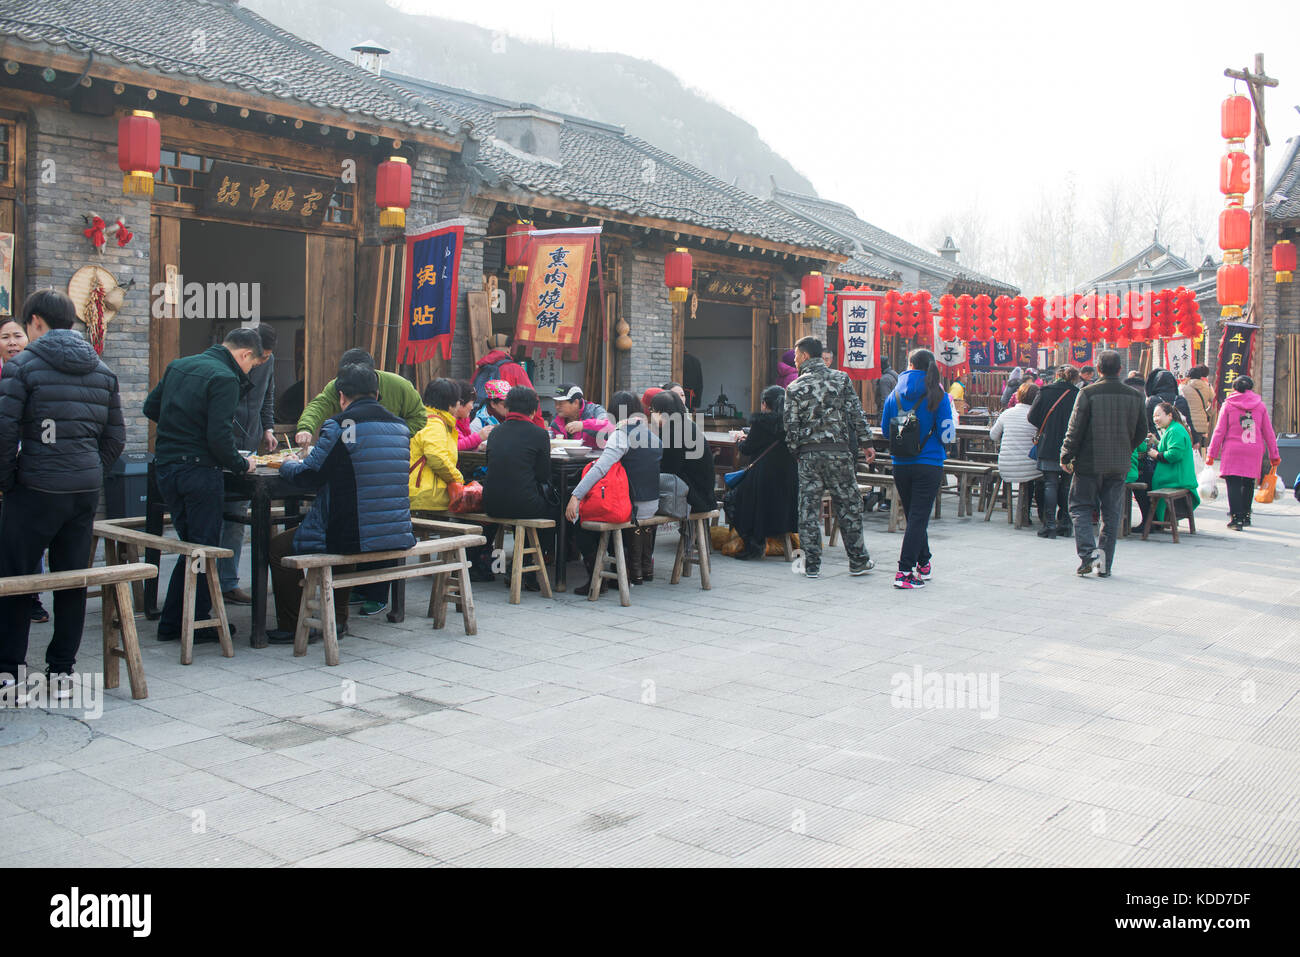 Retro 2016 rues en Chine.Les gens visiter et manger à une foire du temple. Banque D'Images